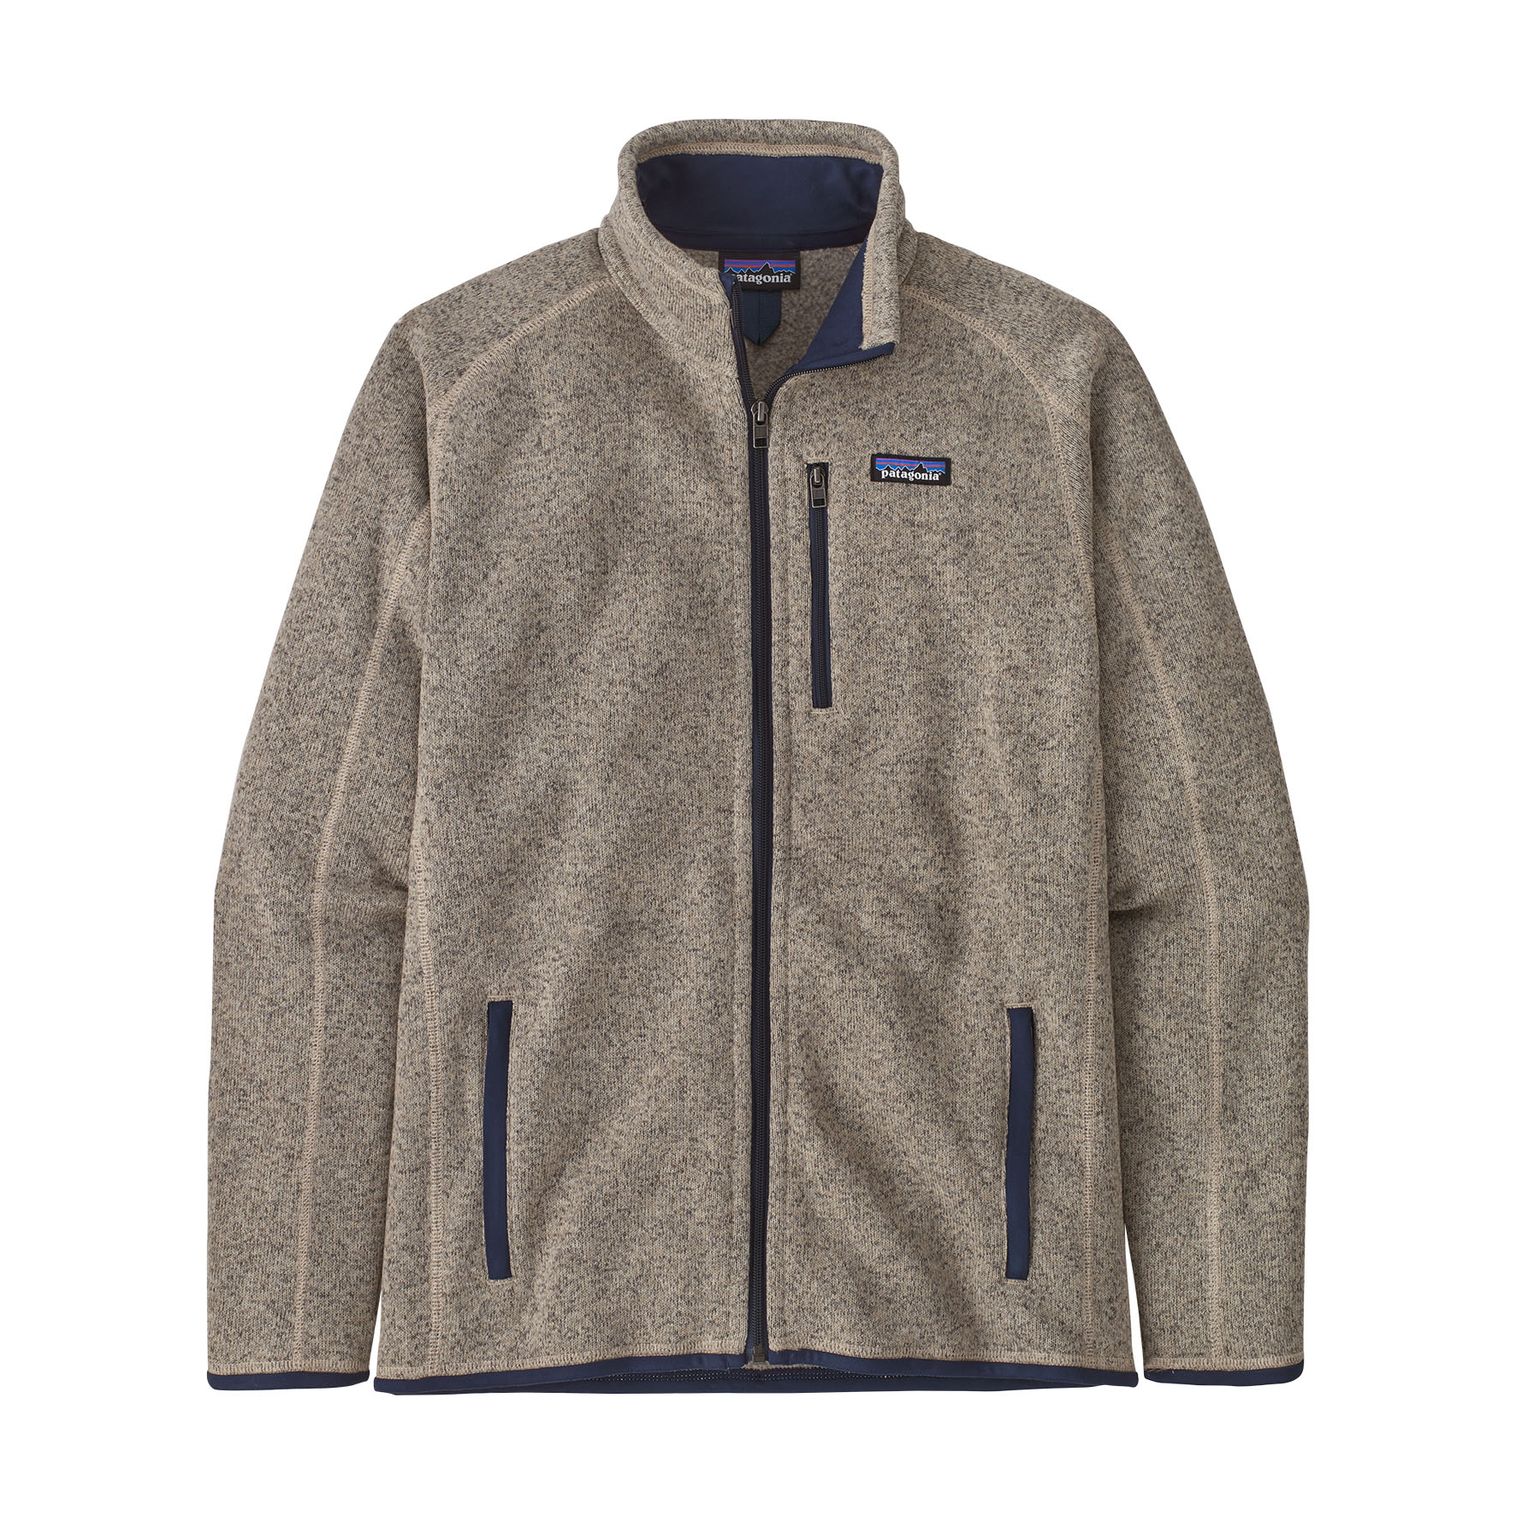 Patagonia Men's Better Sweater Fleece Jacket Oar Tan